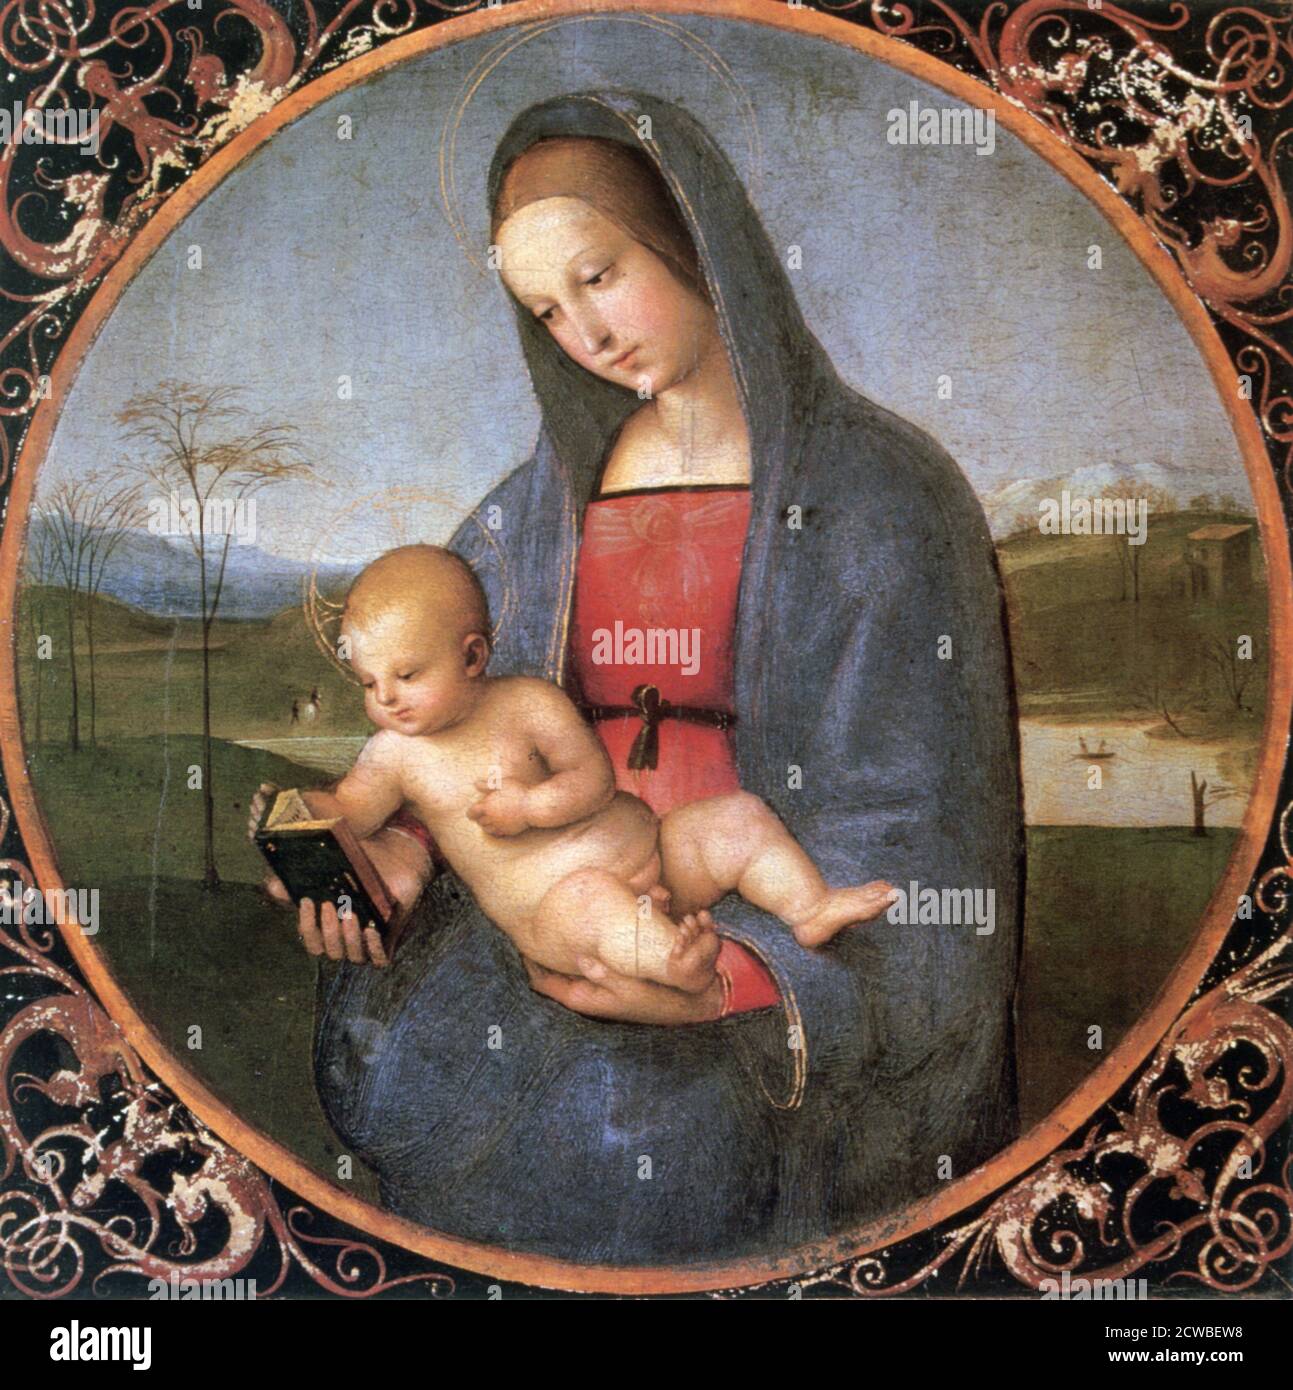 Die Madonna Conestabile', 1502-1503. Künstler: Raphael. Raphael (1483-1520) war ein italienischer Maler und Architekt der Hochrenaissance. Seine Arbeit wird für seine Klarheit der Form, Leichtigkeit der Komposition und visuelle Leistung der menschlichen Größe bewundert. Stockfoto